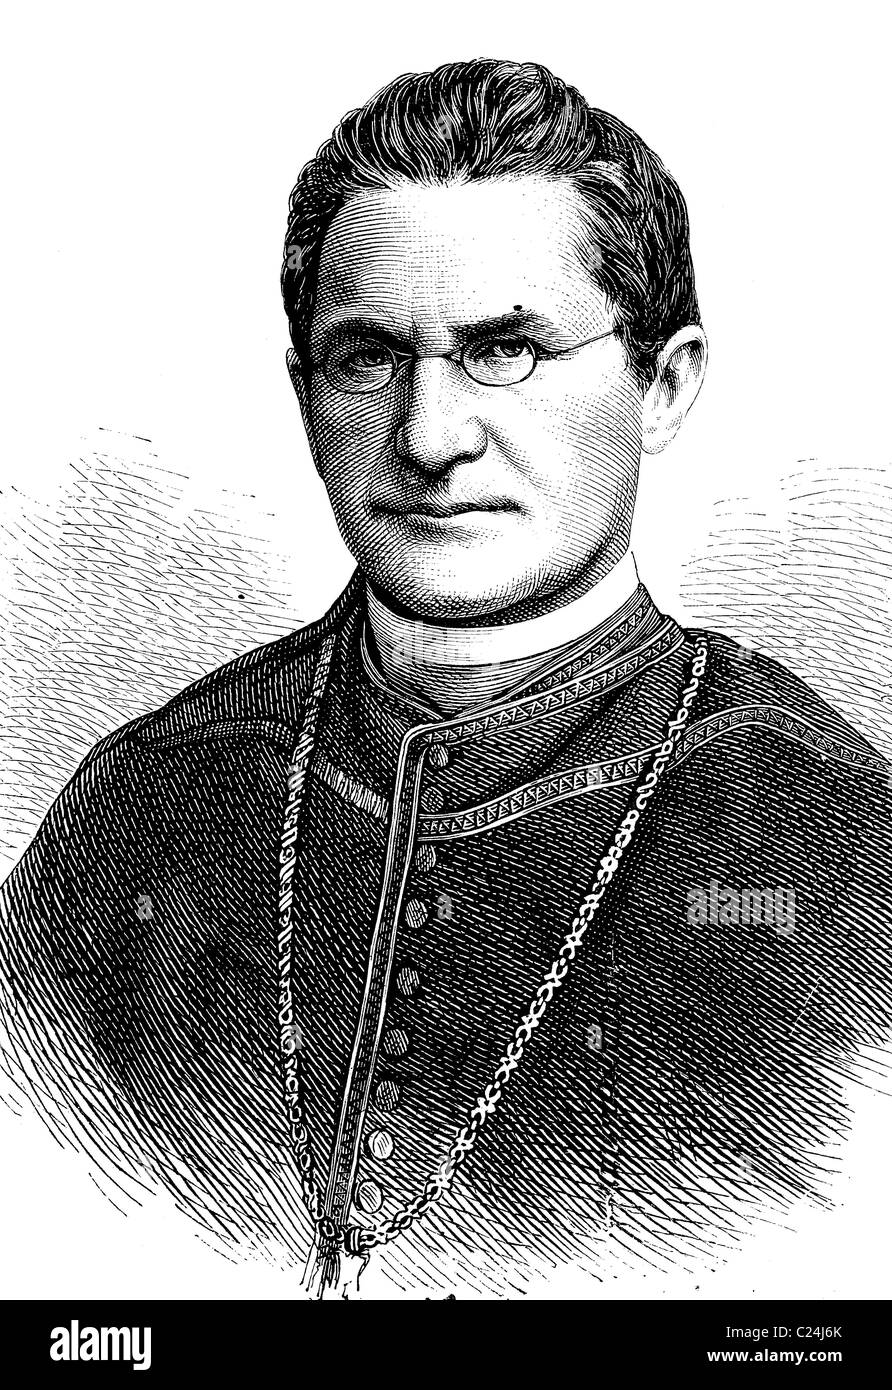 Obispo Auxiliar Lothar von Kuebel, administrador de la Diócesis de Friburgo, 1823 - 1881, ilustración histórica, 1877 Foto de stock